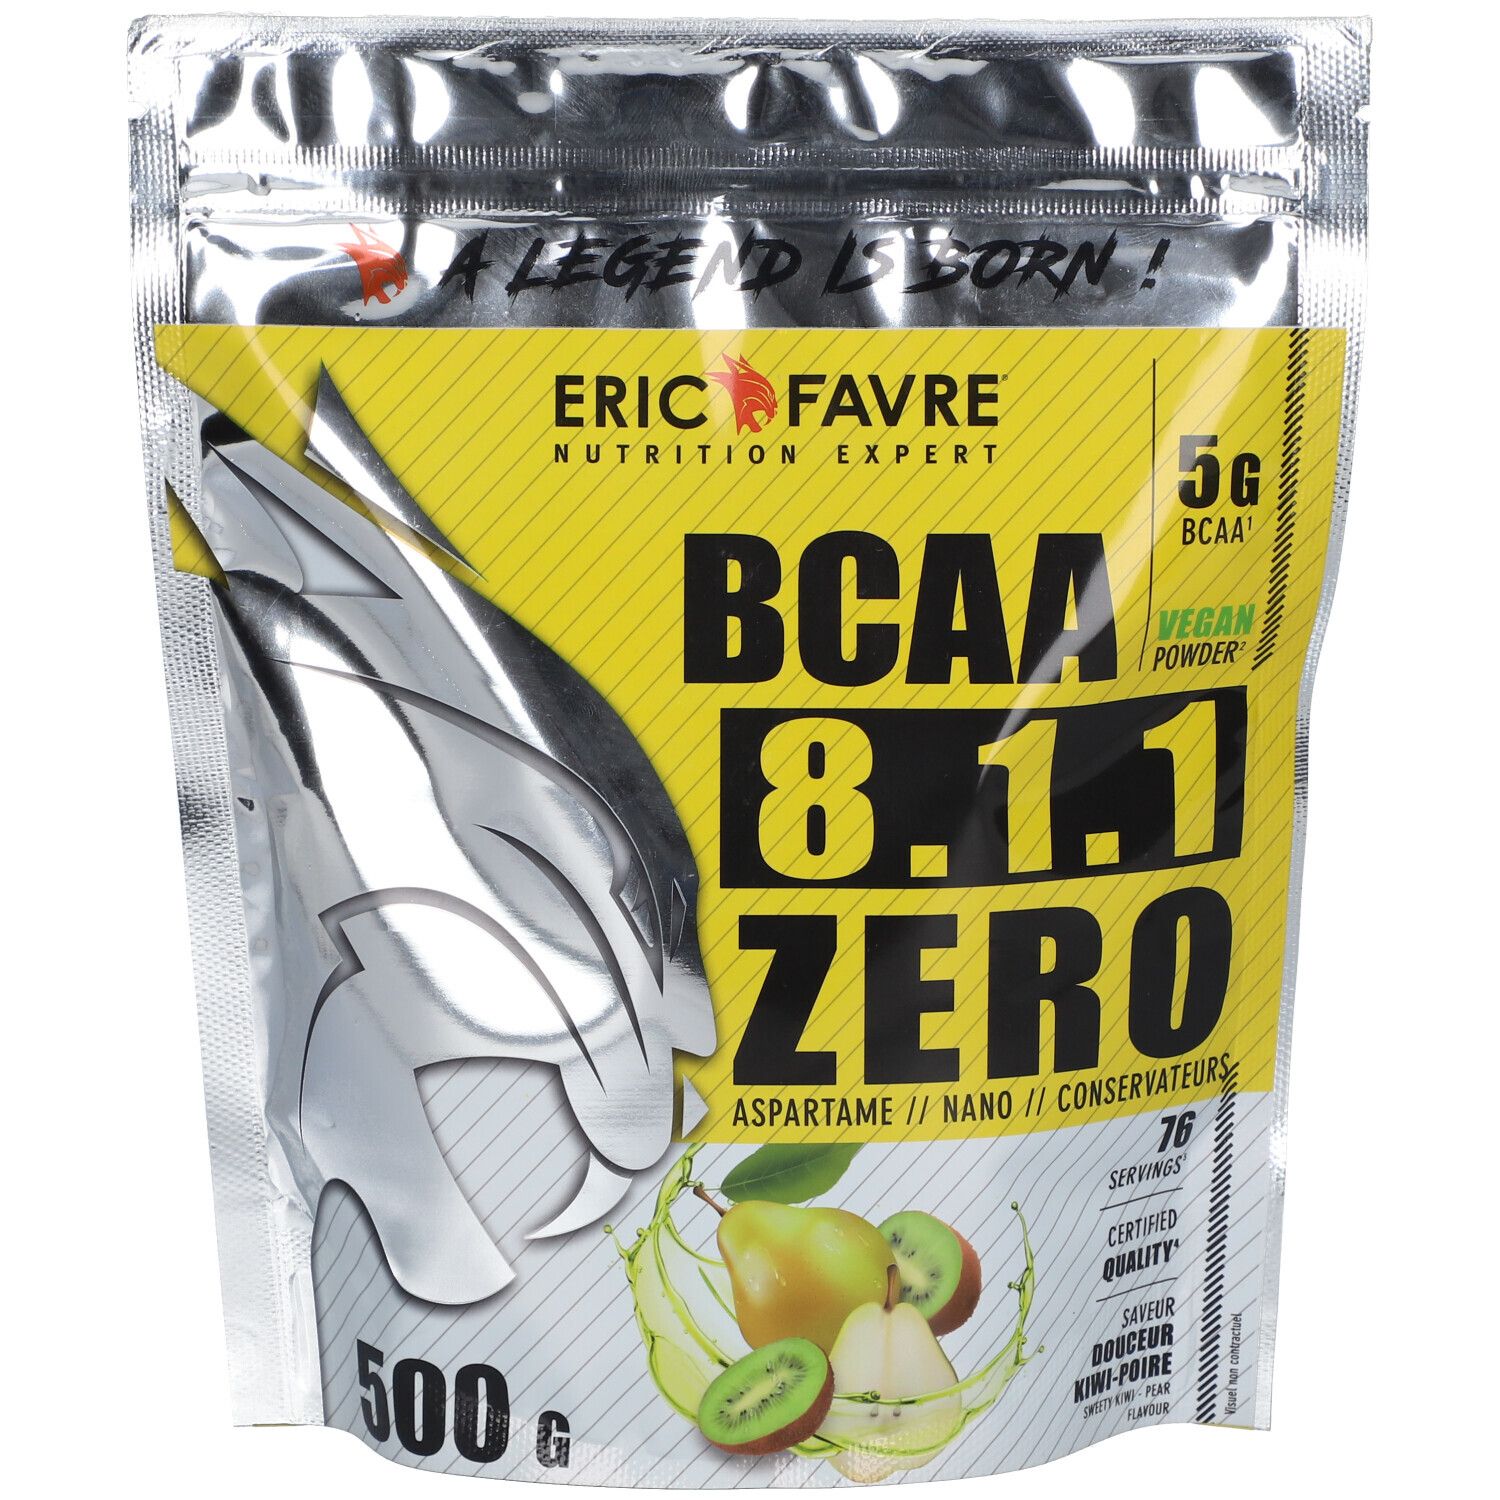 Eric Favre Bcaa 8.1.1 Zero Vegan Saveur kiwi-poire